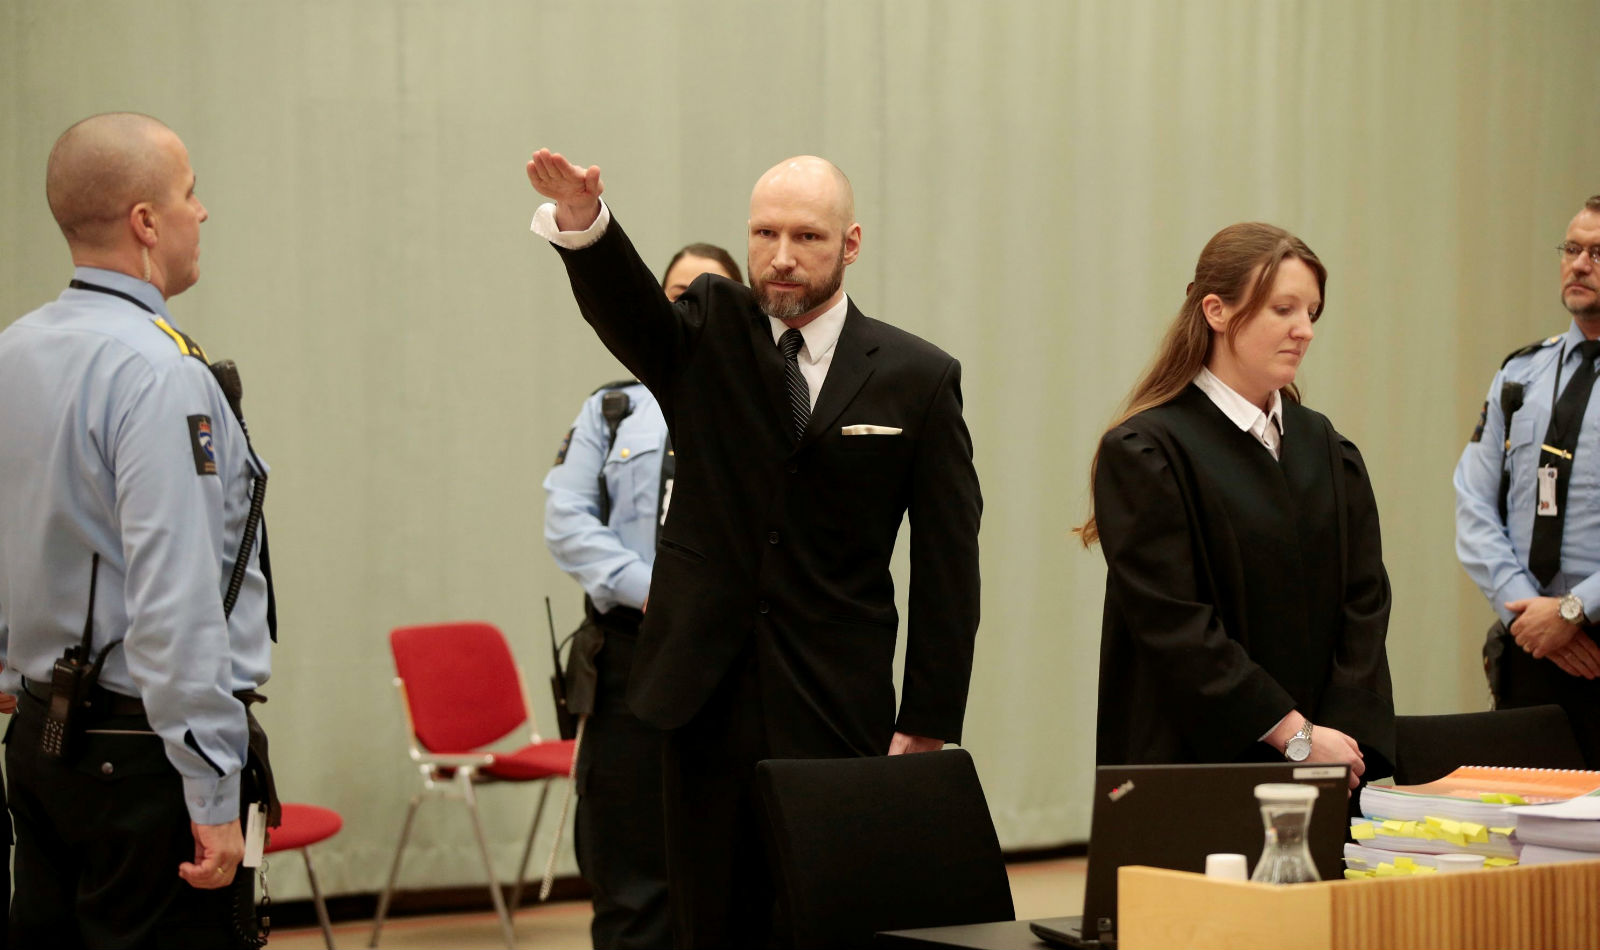 布雷維克於 2016 年控告挪威政府對他單獨囚禁及監獄條件惡劣，違反人權，地方法院判勝訴。2017 年 1 月審理挪威政府上訴案，布雷維克在庭上作出納粹敬禮手勢。　圖片來源：路透社